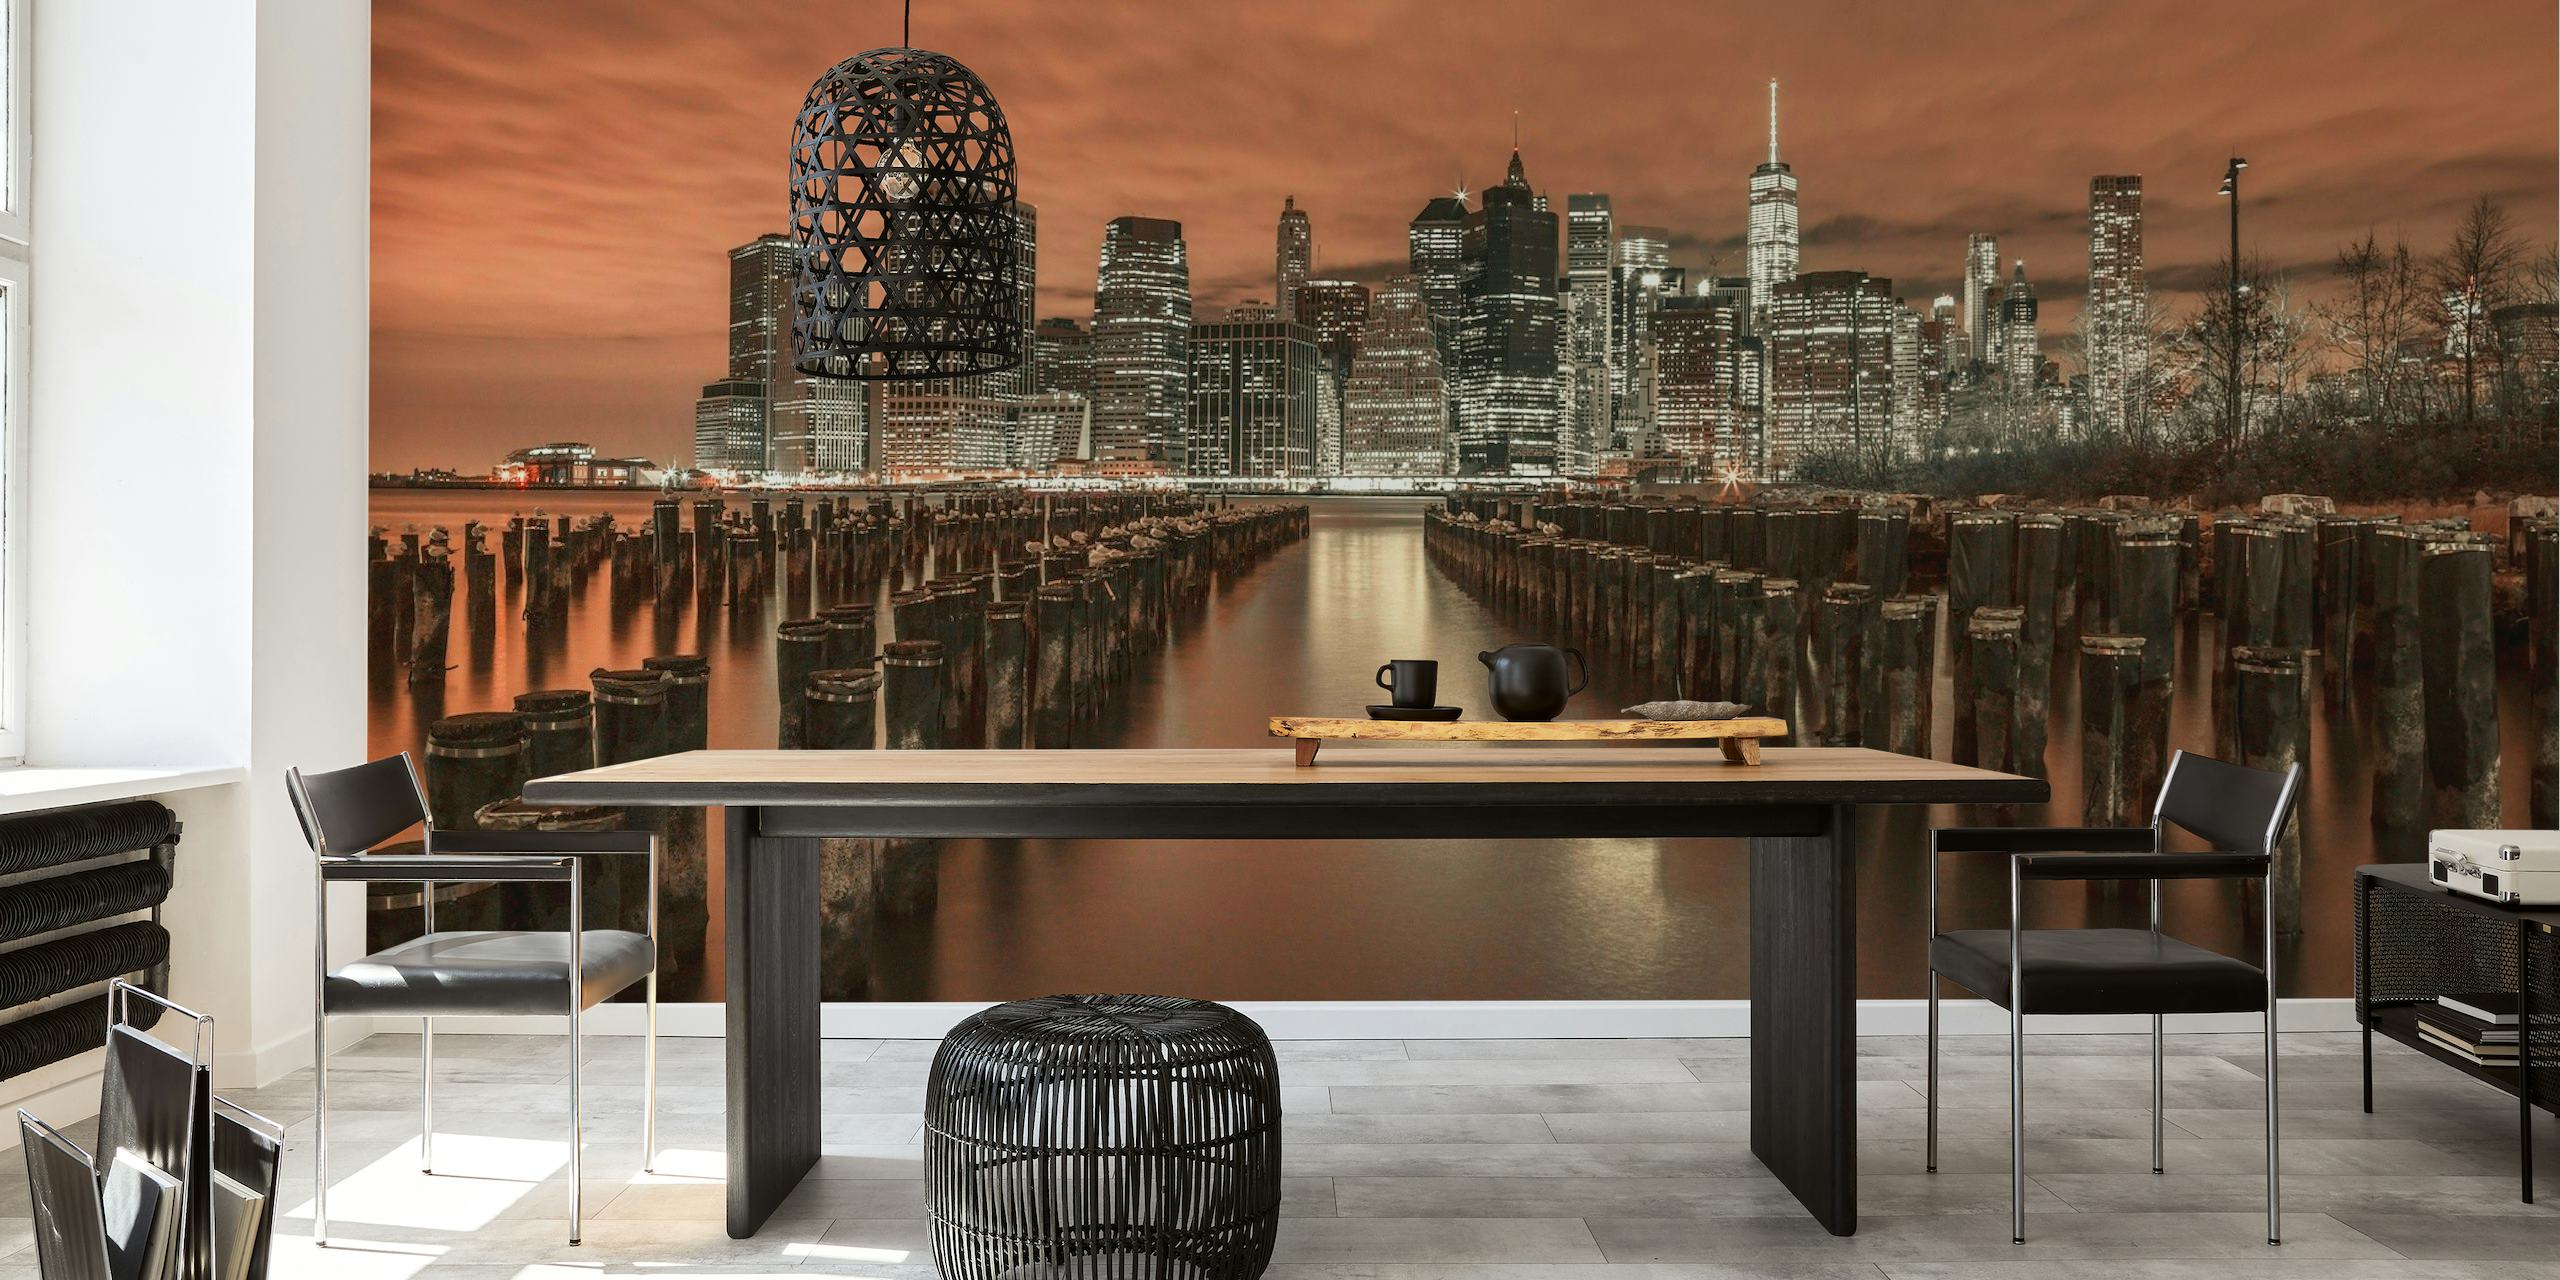 Manhattans skyline fototapet med groynes som leder ut i vattnet i sepia-toner